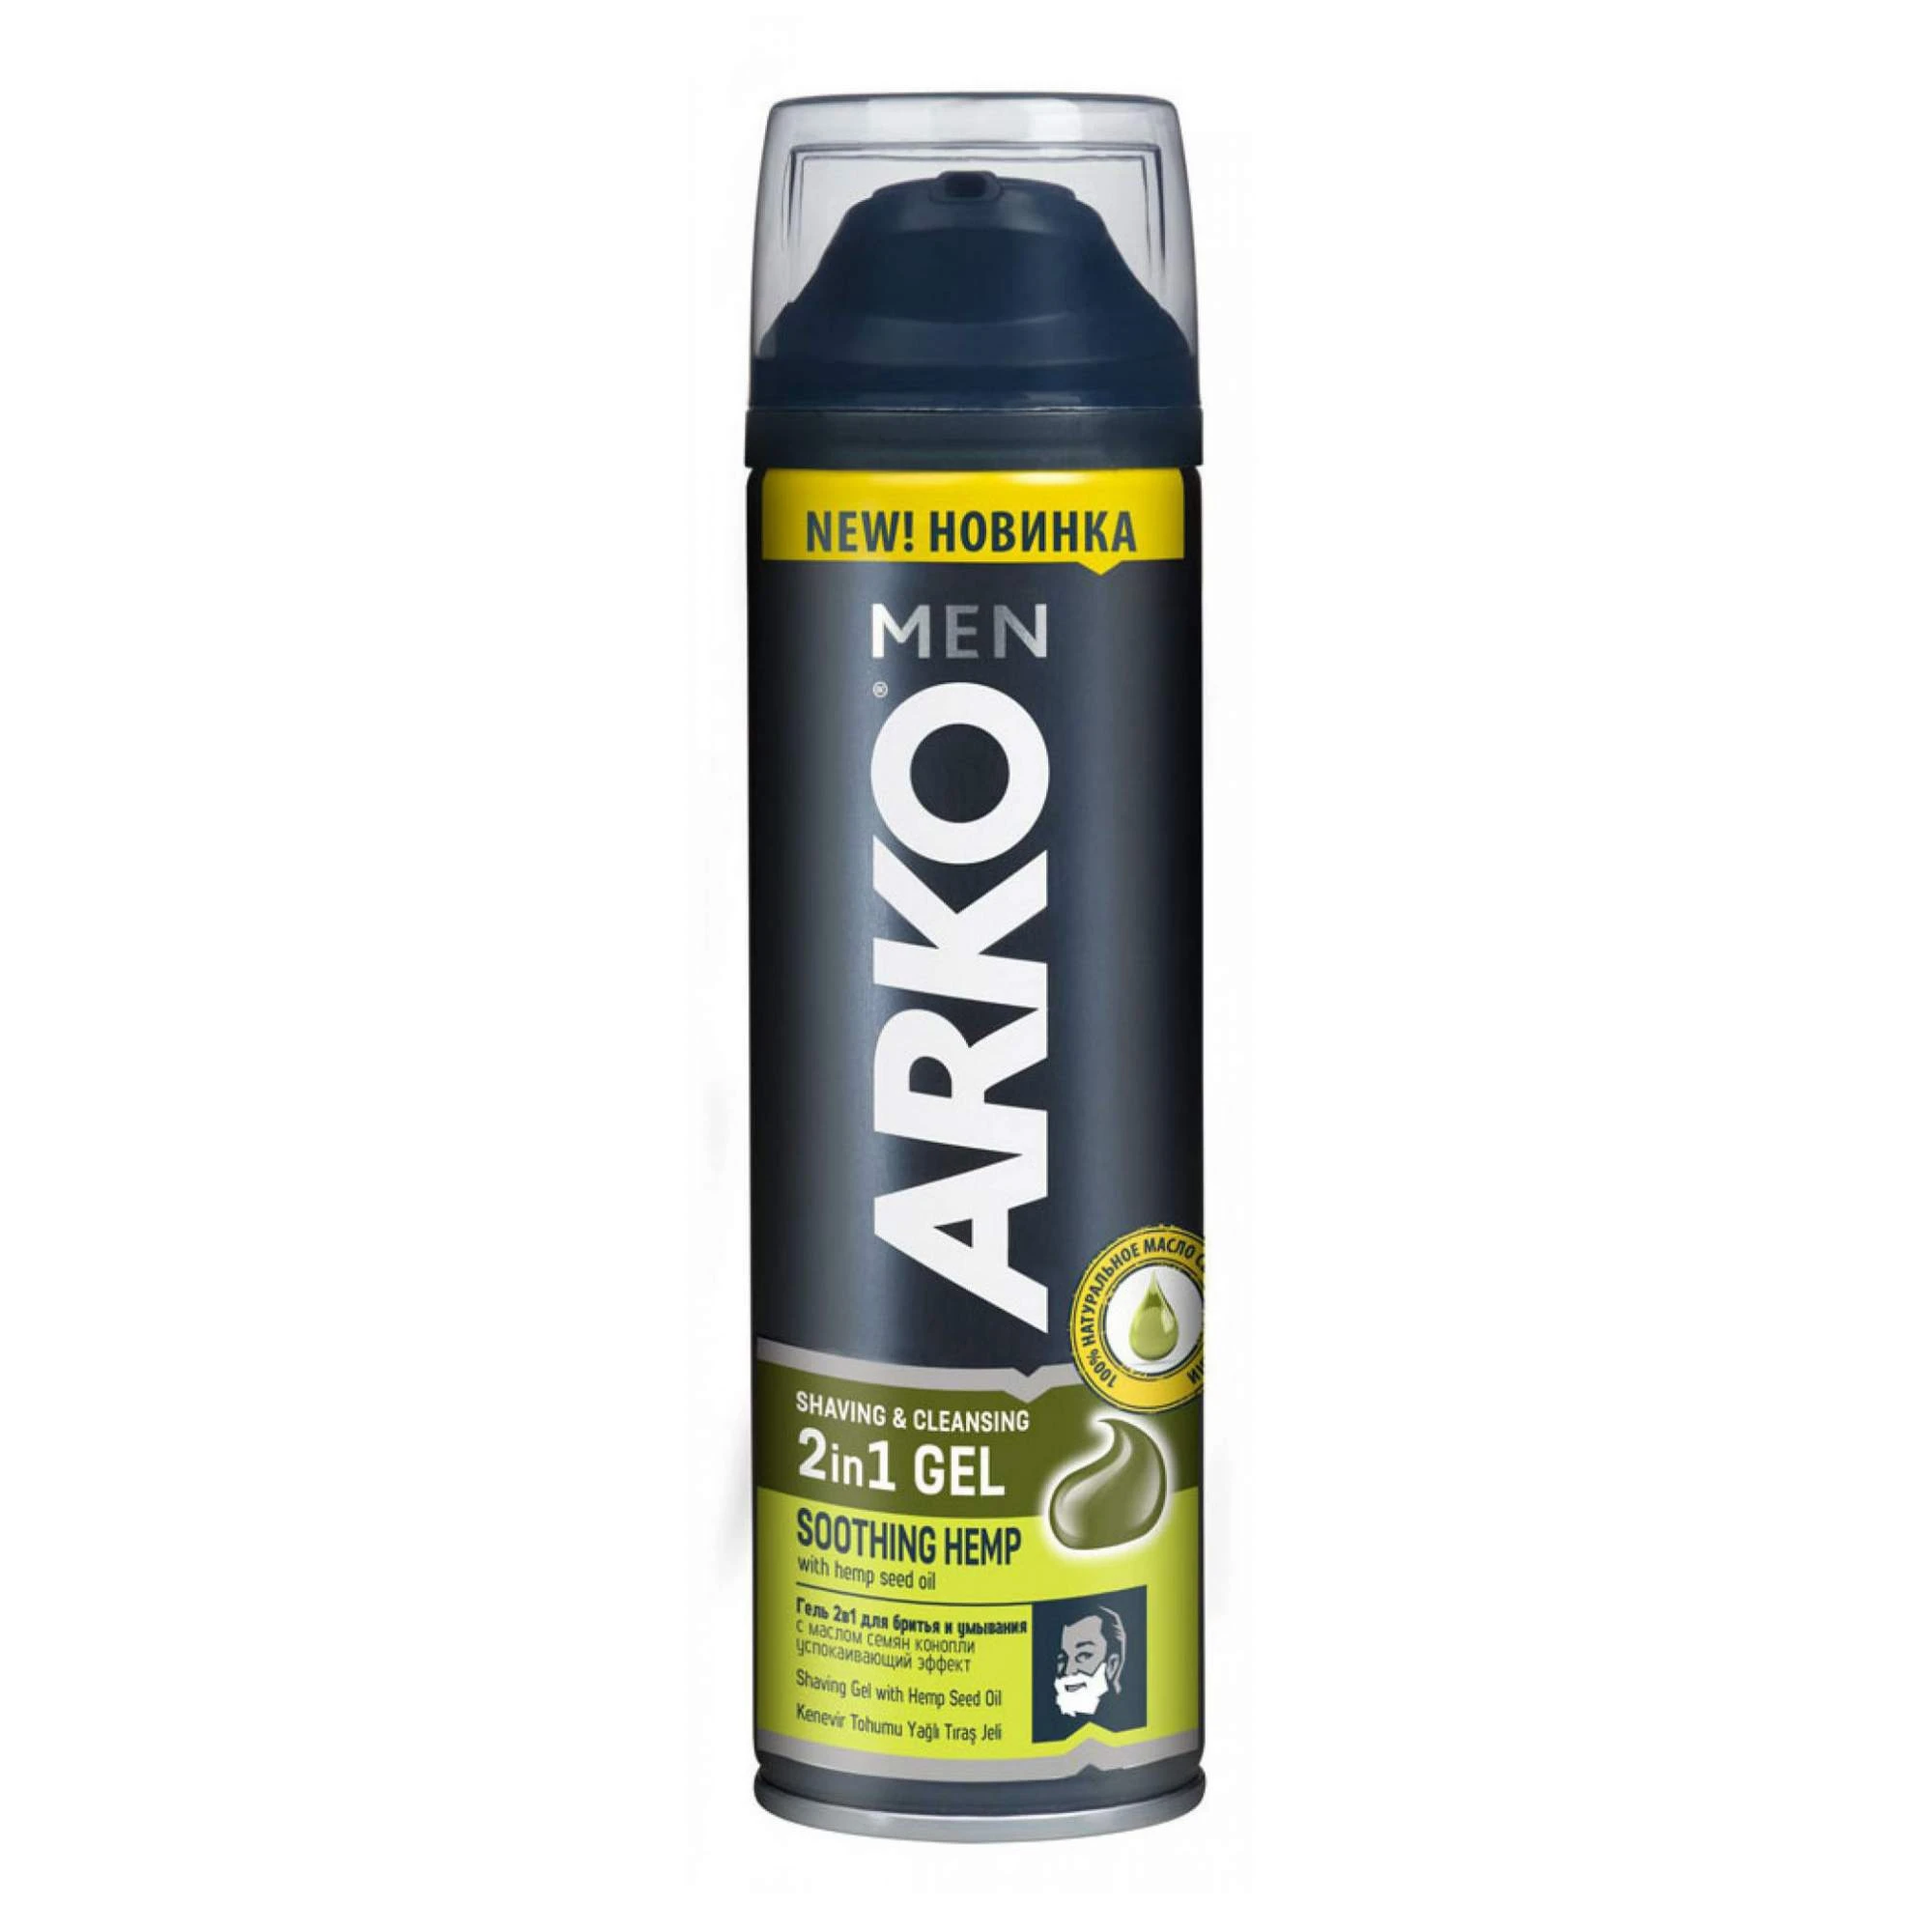 ARKO MEN гель для бритья и умывания 2в1 200мл. HEMP арт. 510635